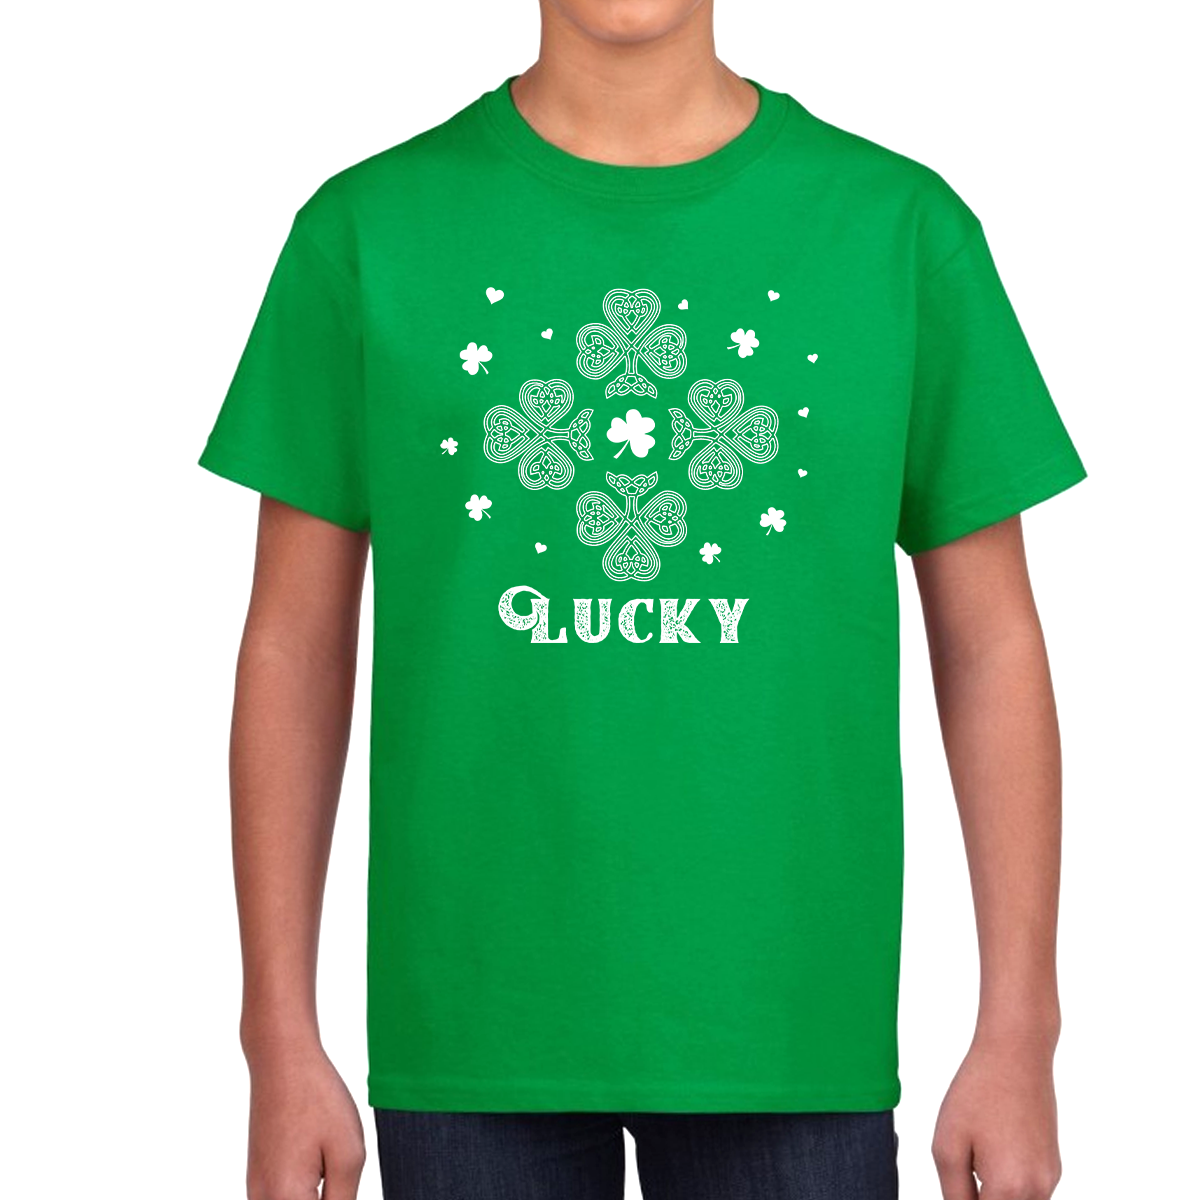 Kids St Patricks Day Shirt Lucky Clover St Pattys Day Shirts For Boys St Patrick's Day Shamrock Shirt